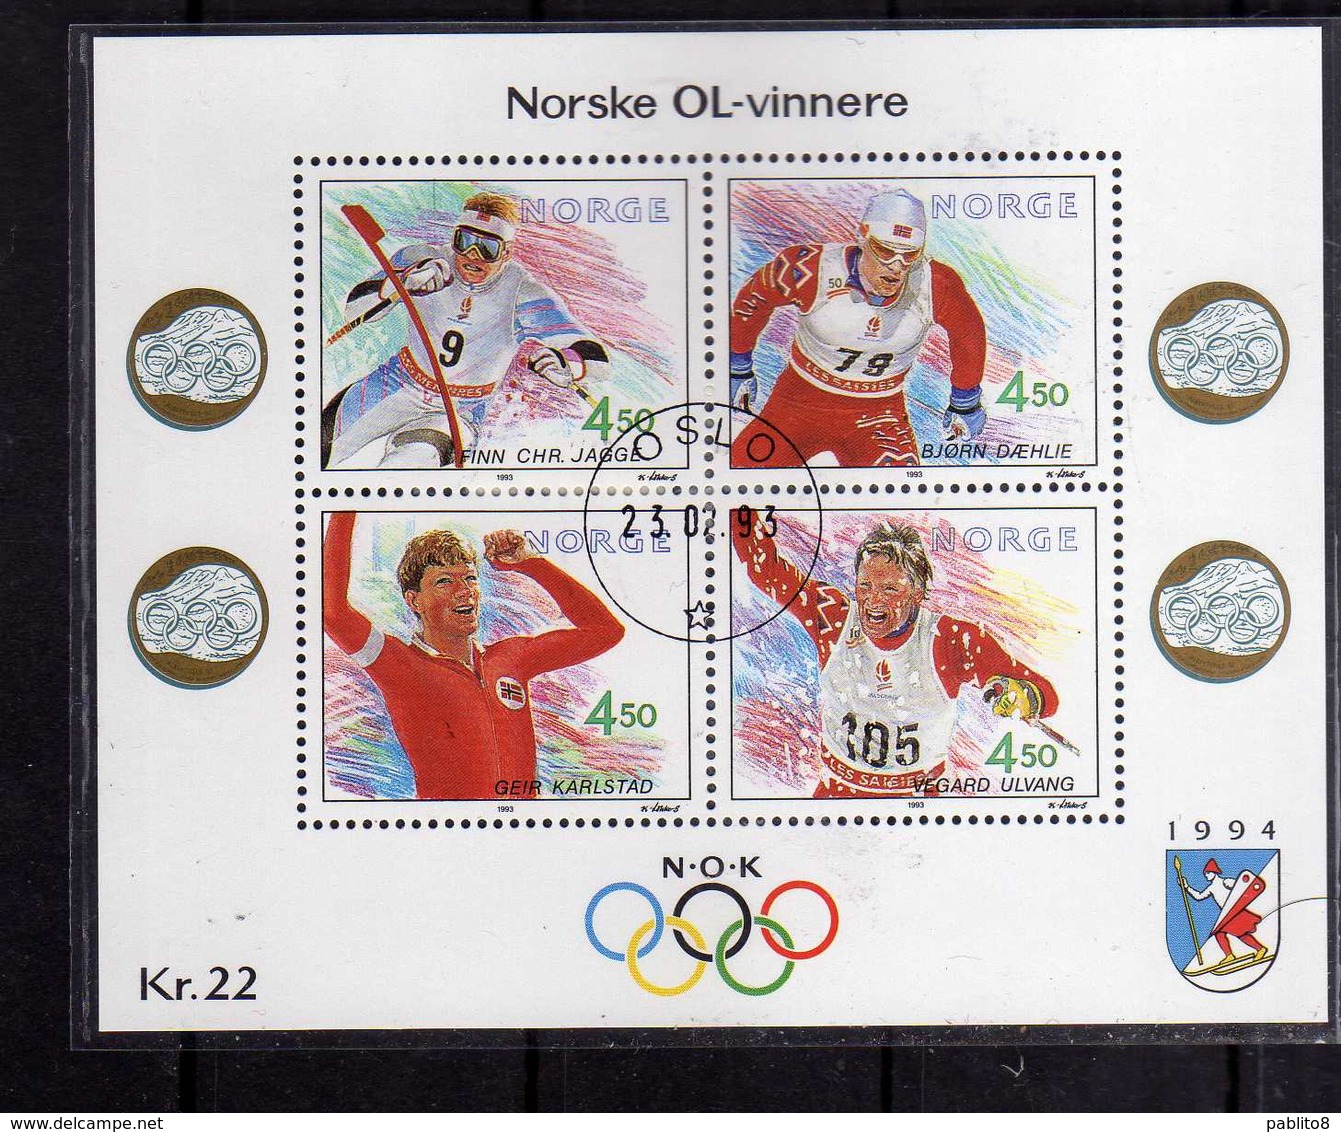 NORWAY NORGE NORVEGIA NORVEGE 1993 NORWEGIAN OLYMPIC WINNERS BLOCCO FOGLIETTO BLOCK SHEET FIRST DAY CANCEL FDC - Blocchi & Foglietti